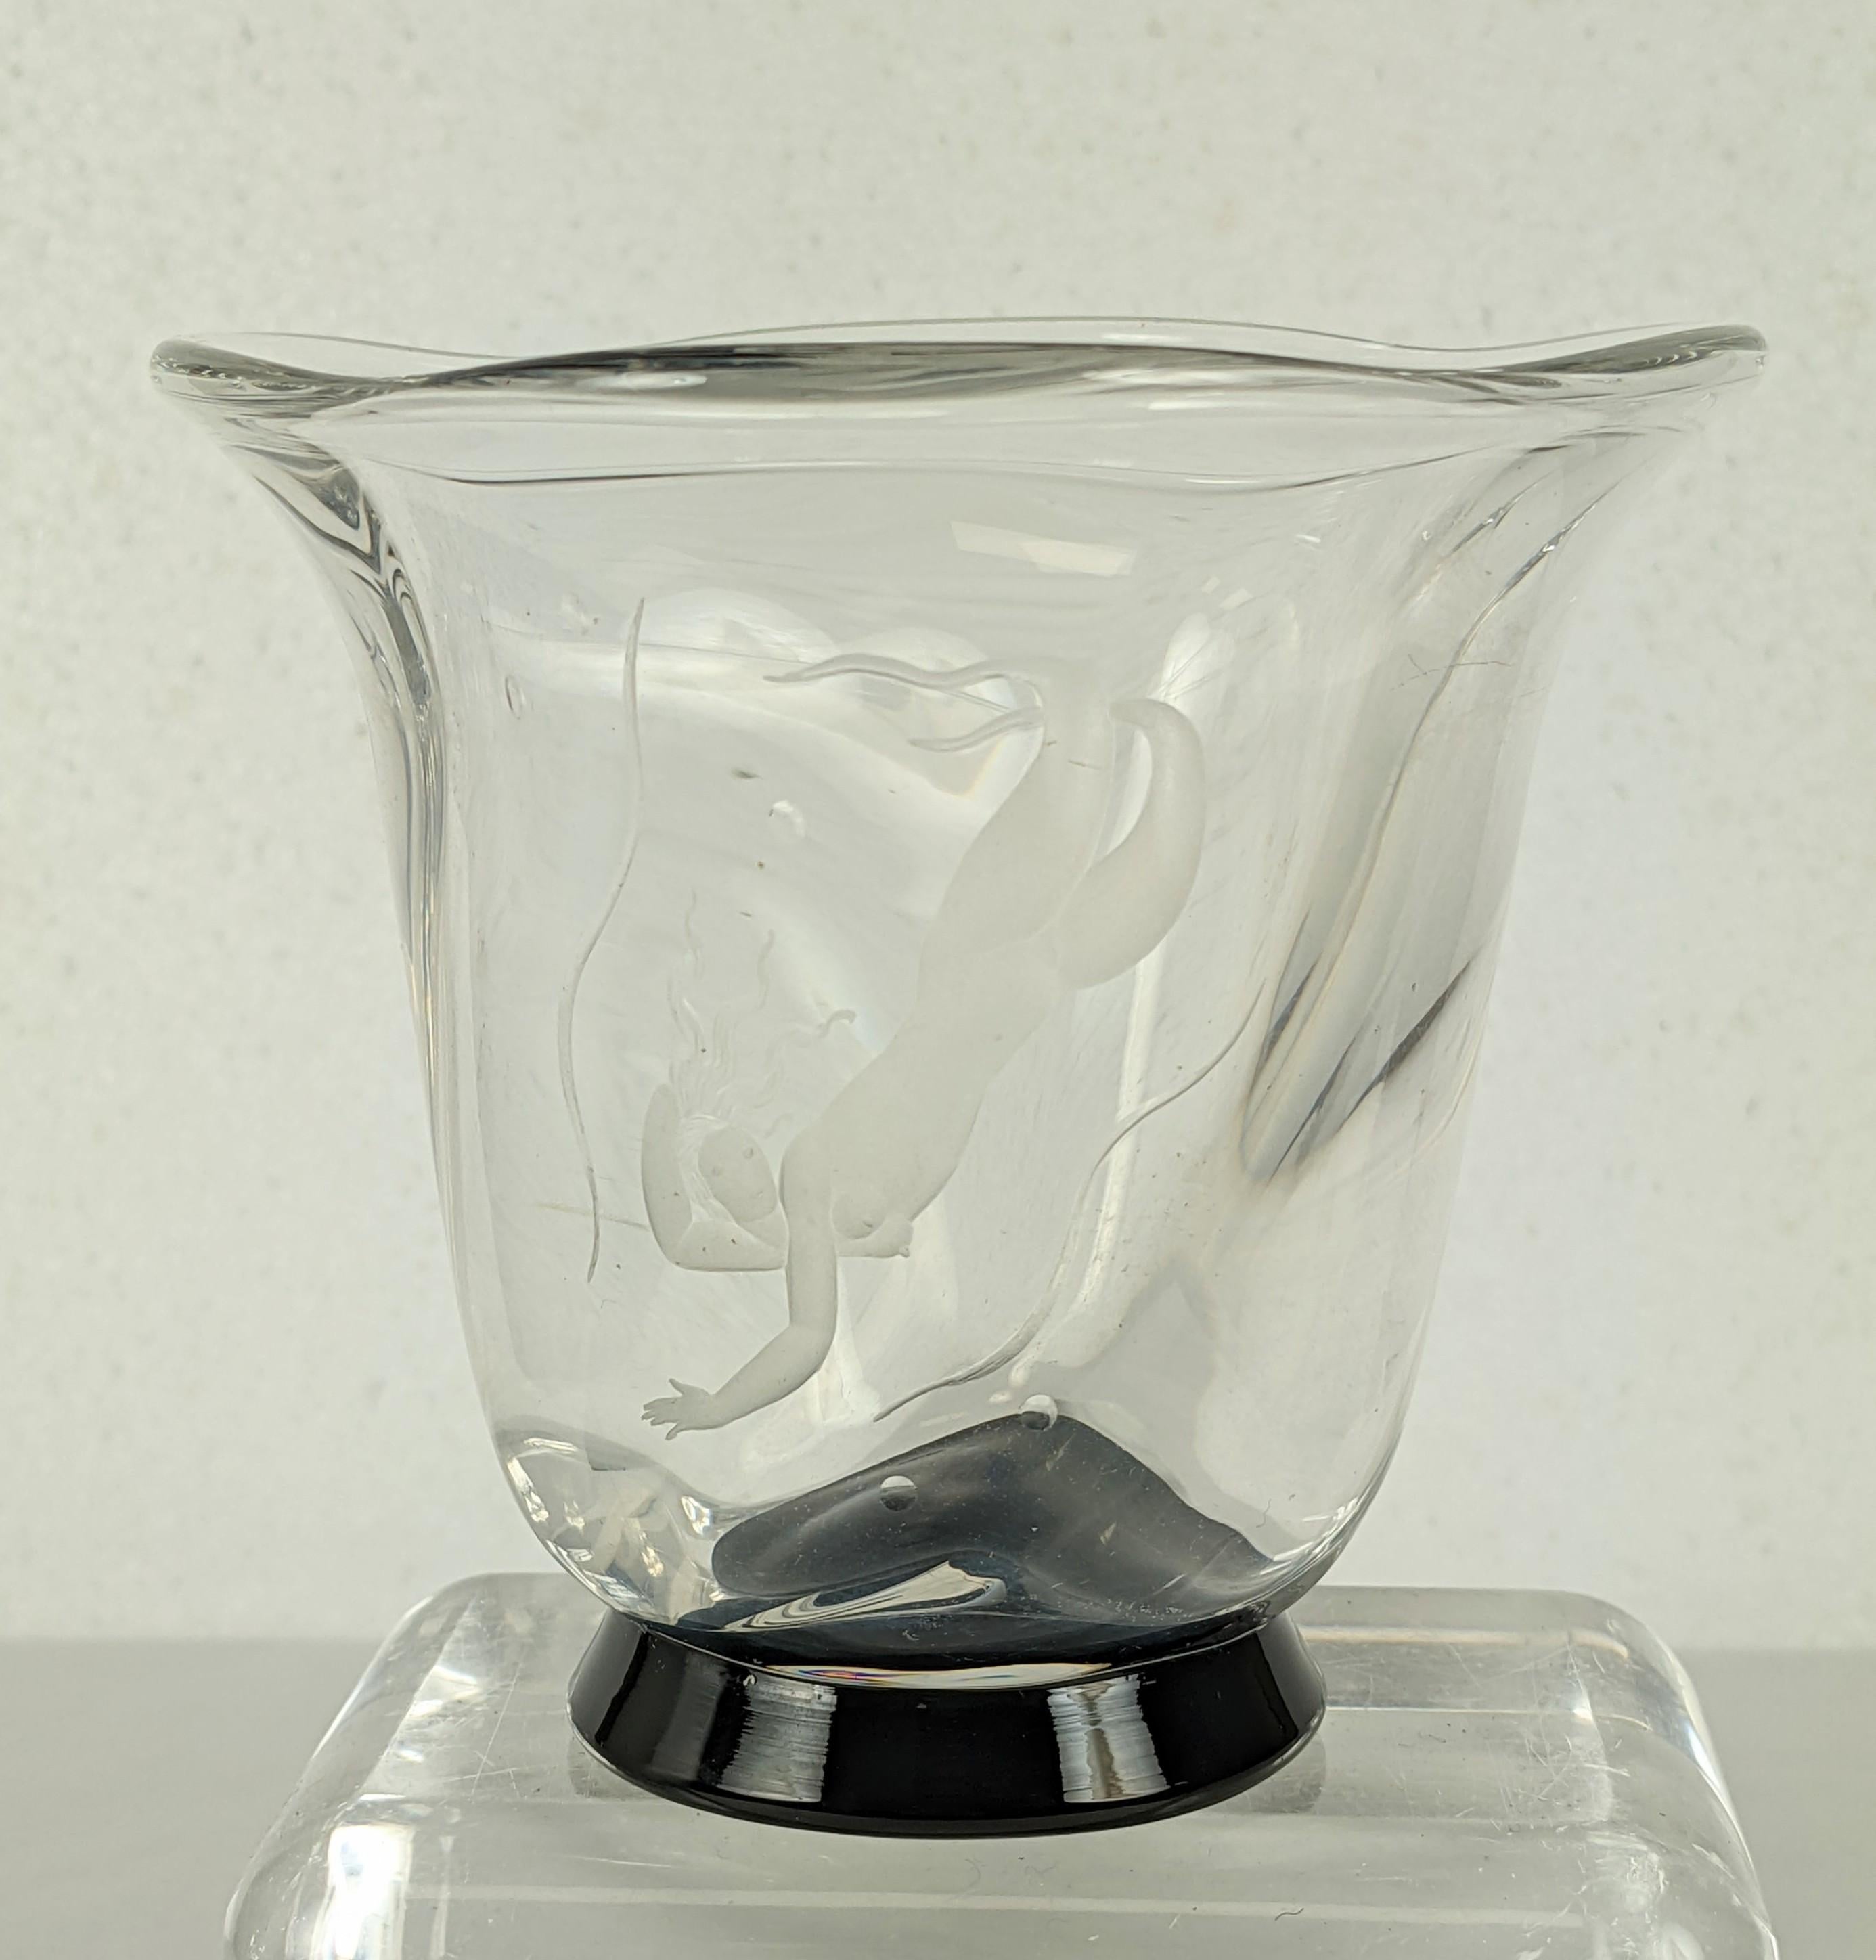 Un bel et charmant exemple des élégantes figures stylisées sur verre de Vicke Lindstrand, réalisées pour la compagnie de verre Orrefors en Suède. Ce vase Art déco est orné d'une sirène gravée qui plonge dans les bulles. 
Le vase en verre épais est